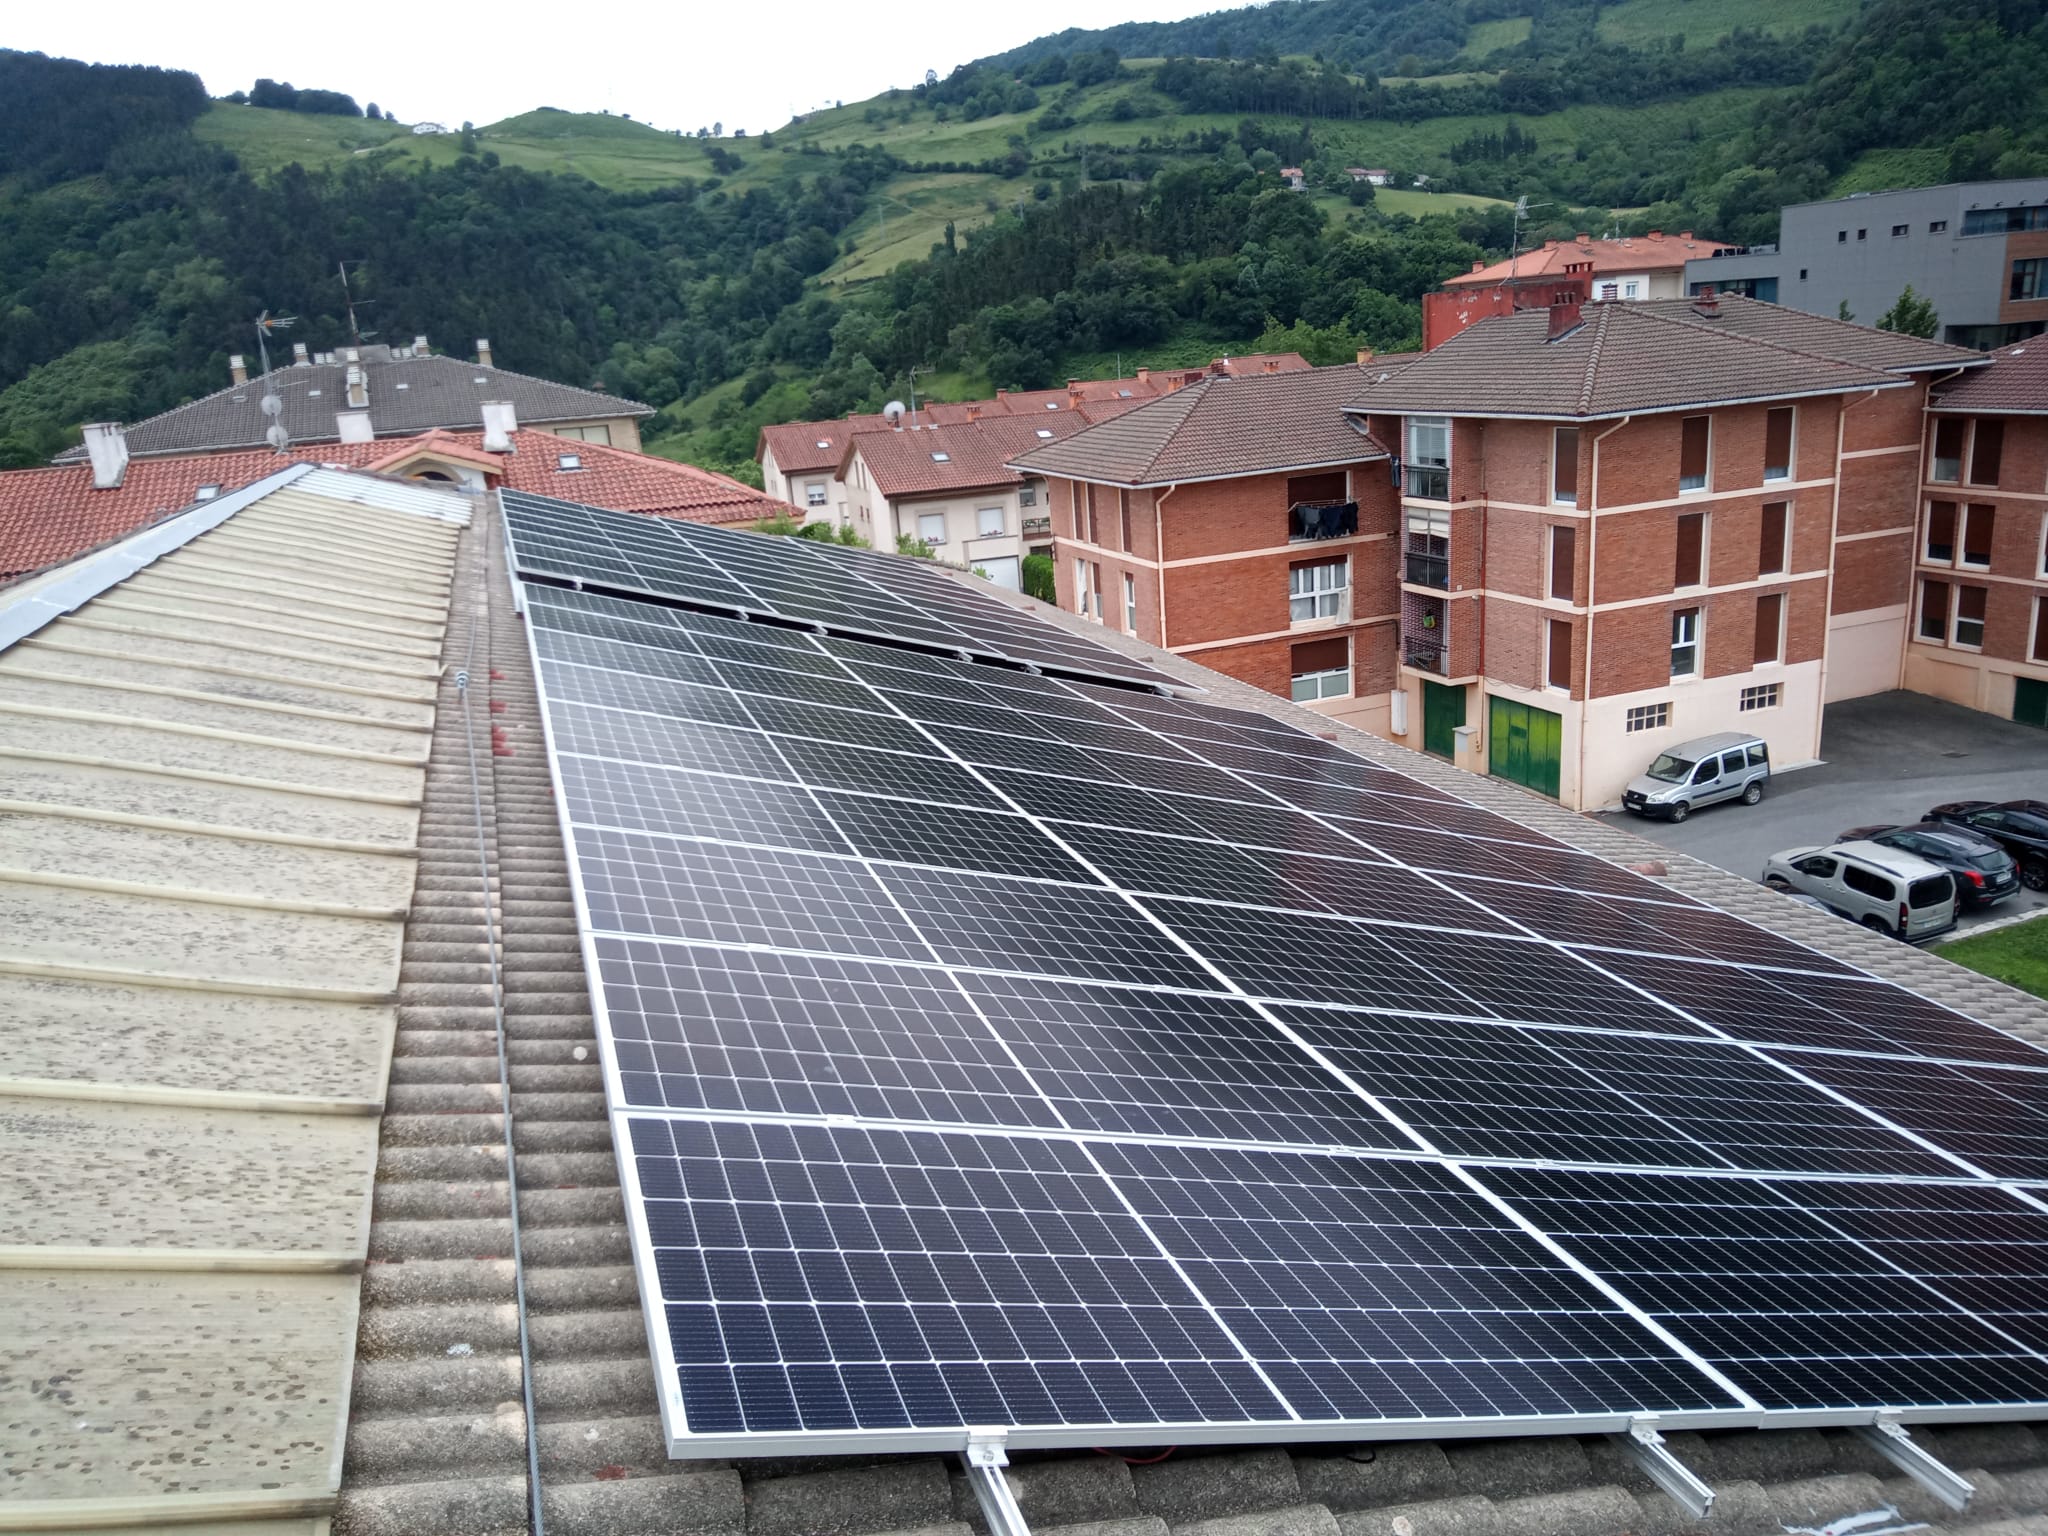 GEK Aizarnazabal: Frontoiako instalazio fotovoltaikoa